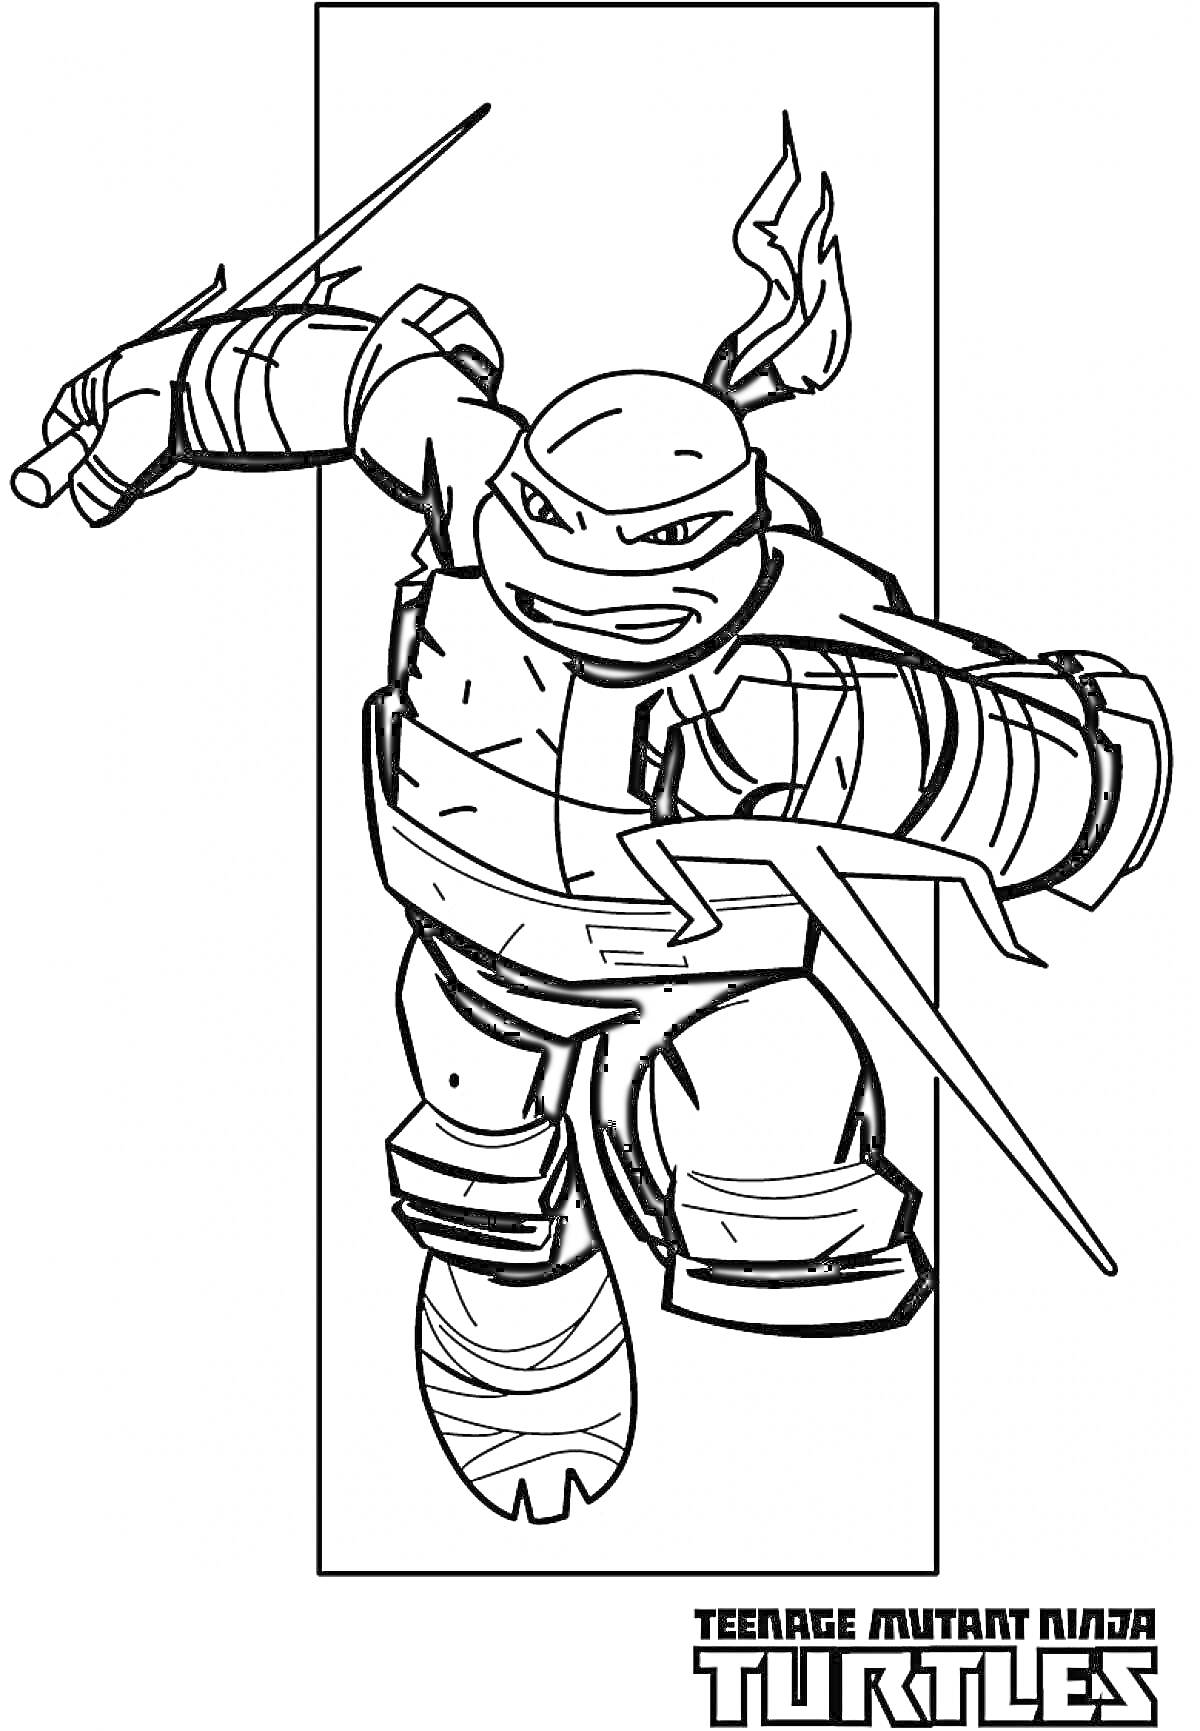 Черепашка-ниндзя с мечами и текстом Teenage Mutant Ninja Turtles